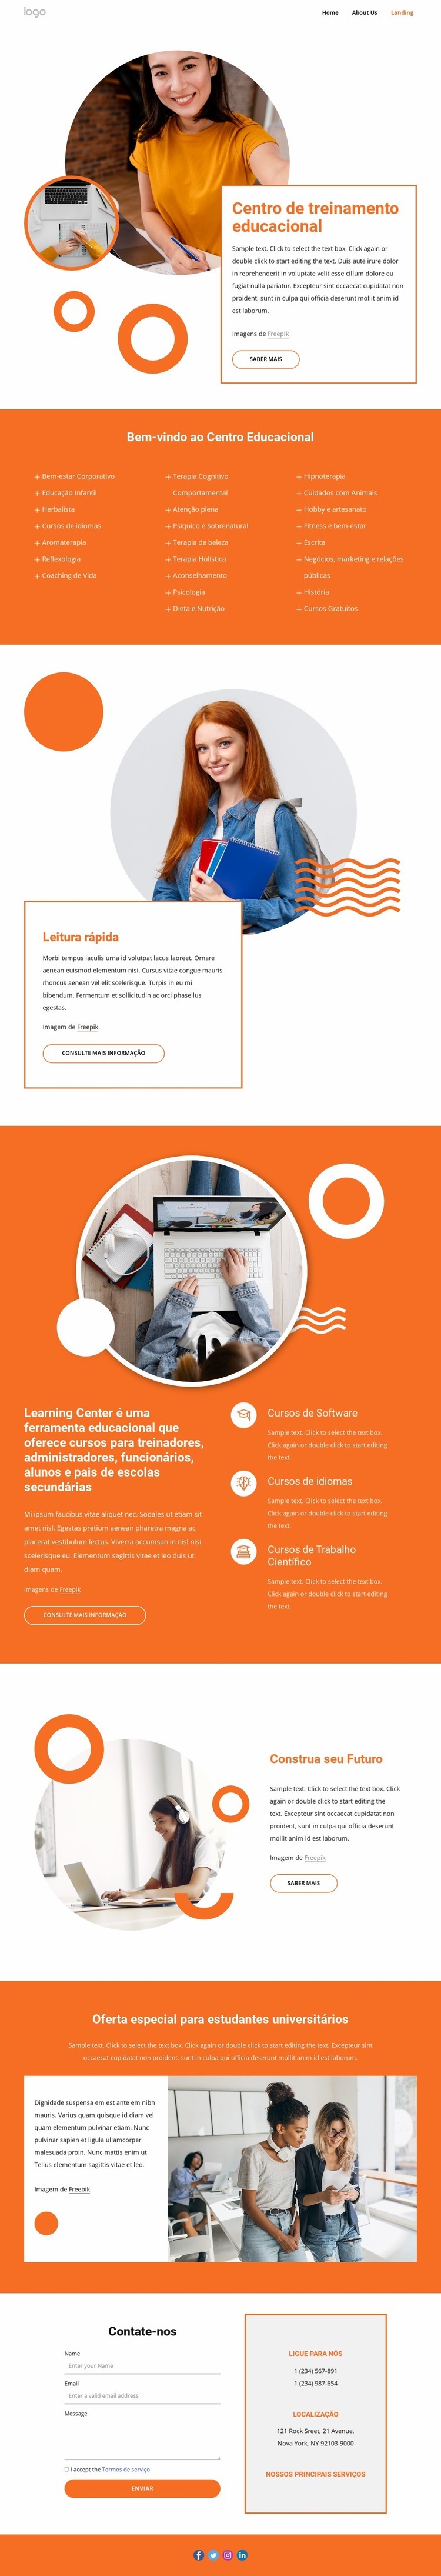 Centro de treinamento educacional Modelo HTML5